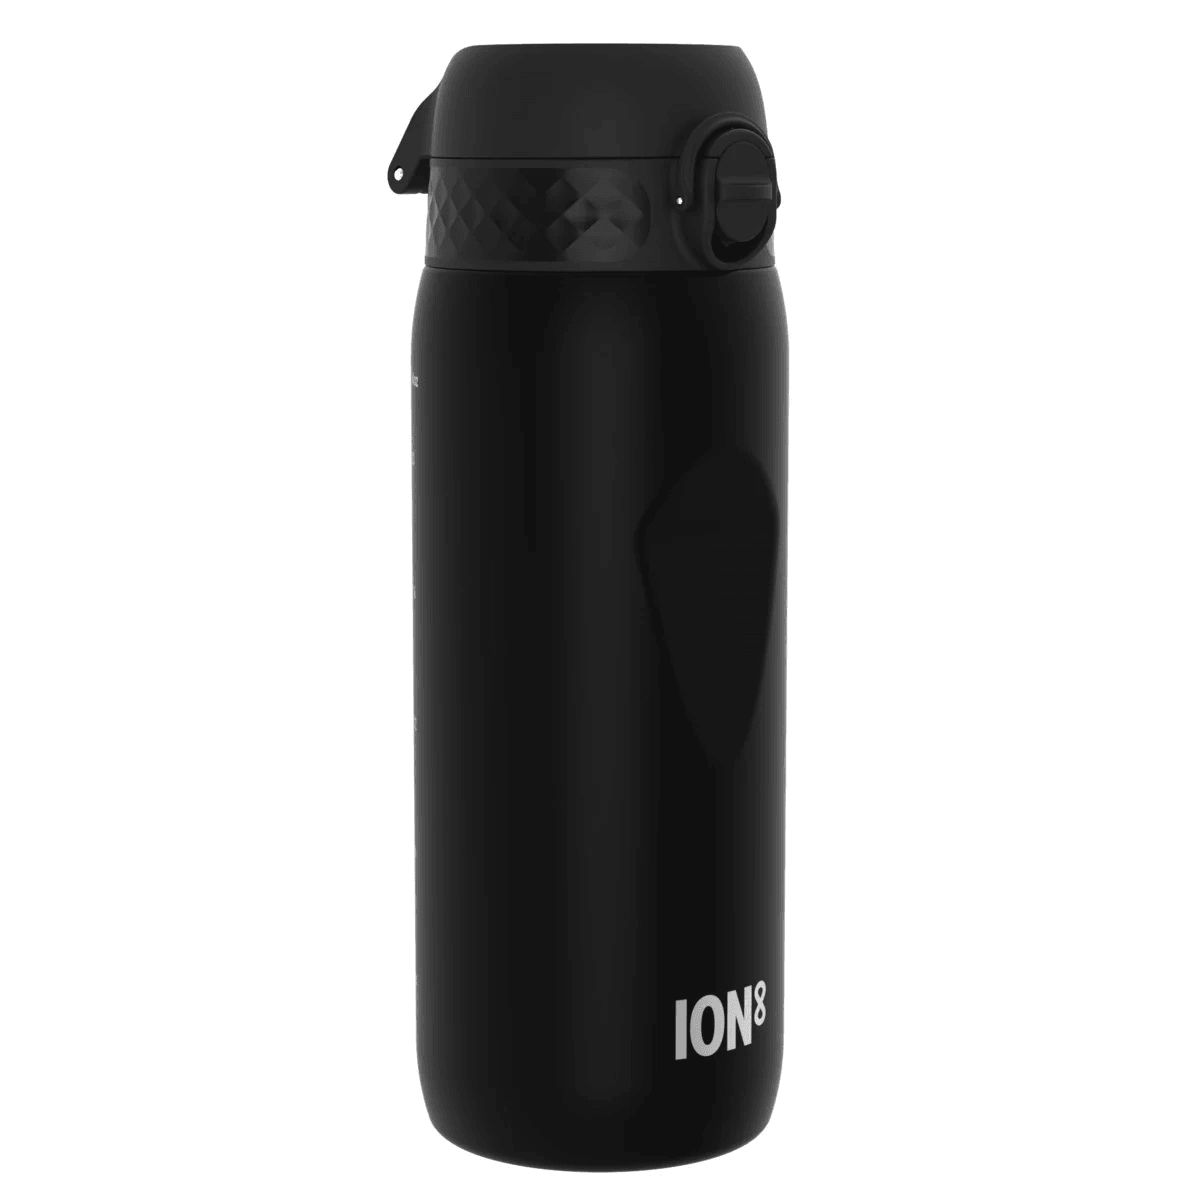 Ion8: Bottle Cycling Water Bottle 750 ml